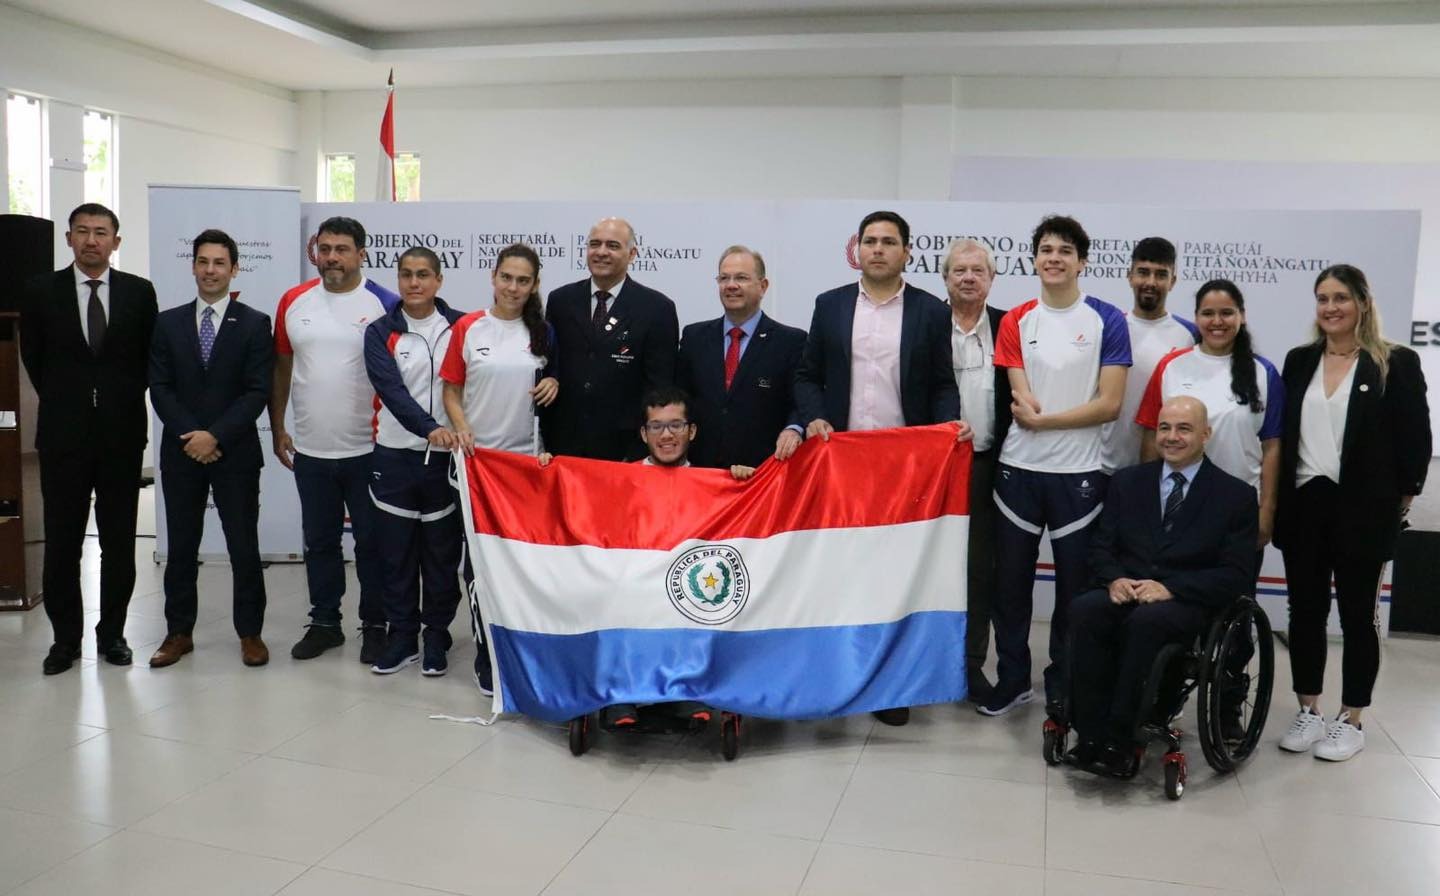 Parapanamericanos: Este jueves se realizó el abanderamiento y la despedida del Team Paraguay